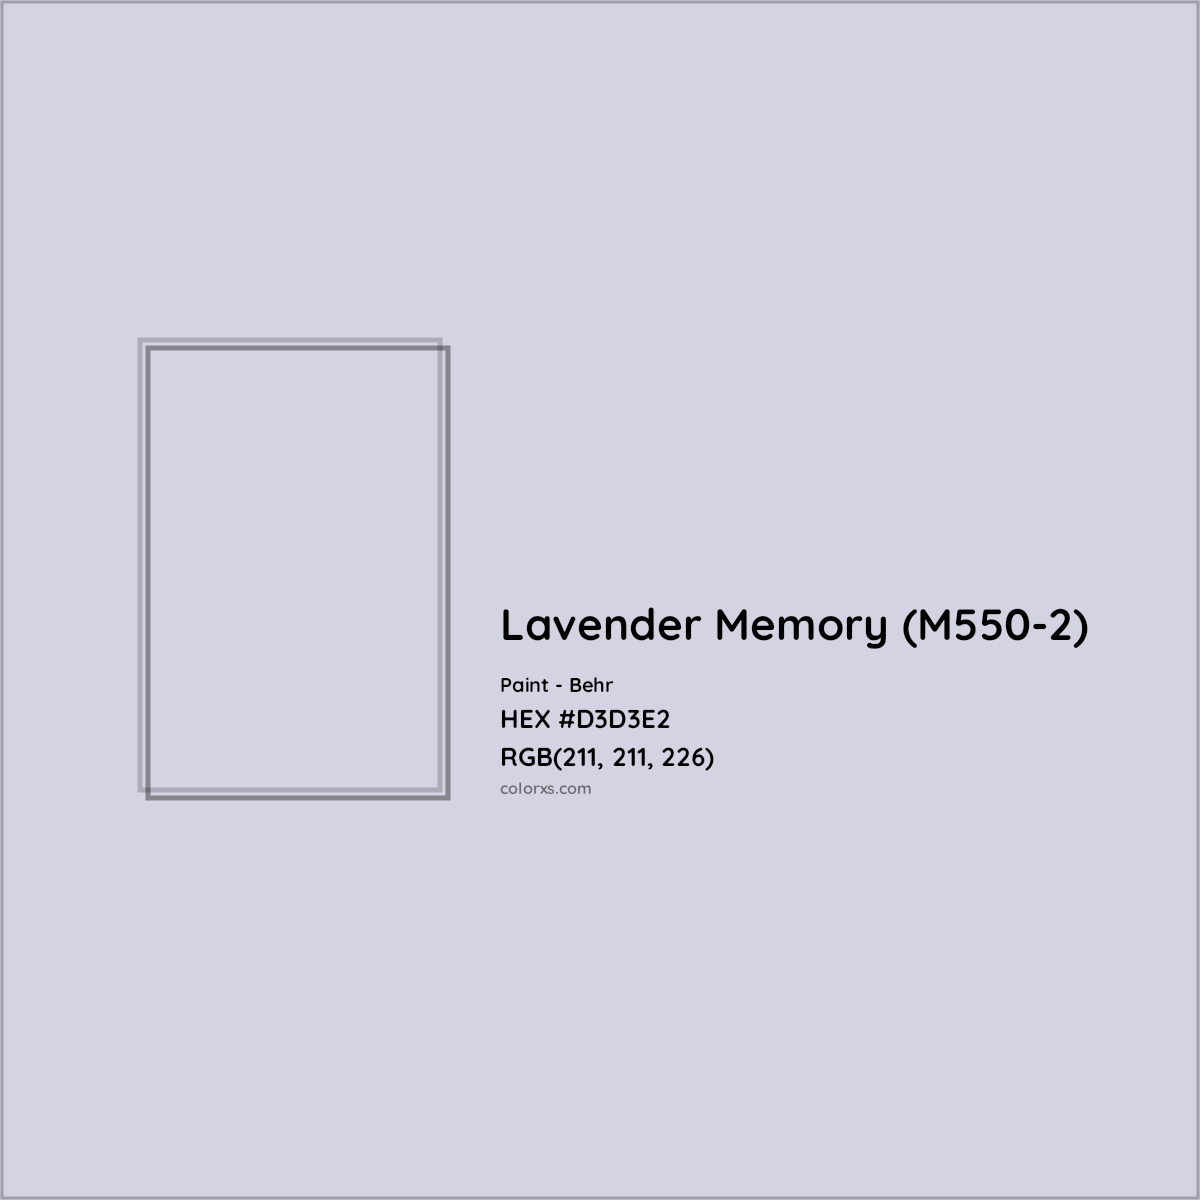 HEX #D3D3E2 Lavender Memory (M550-2) Paint Behr - Color Code